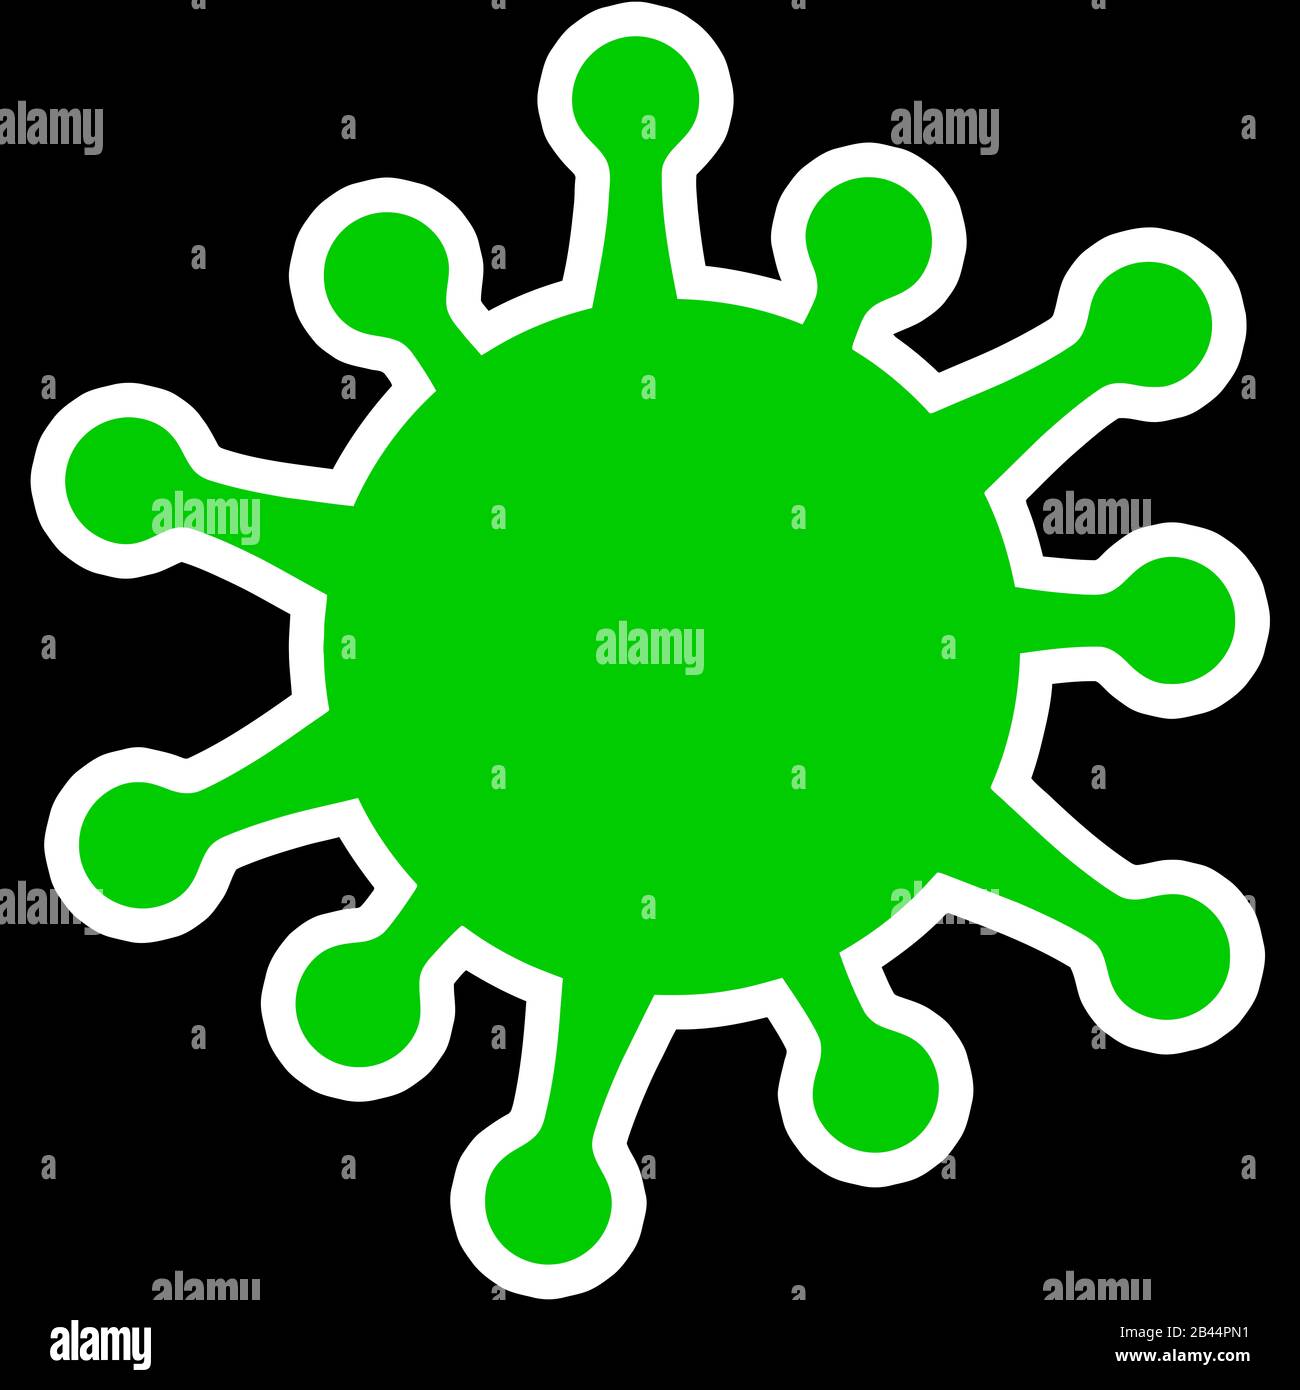 corona virus polmonite verde infezione virale illustrazione medica Foto Stock